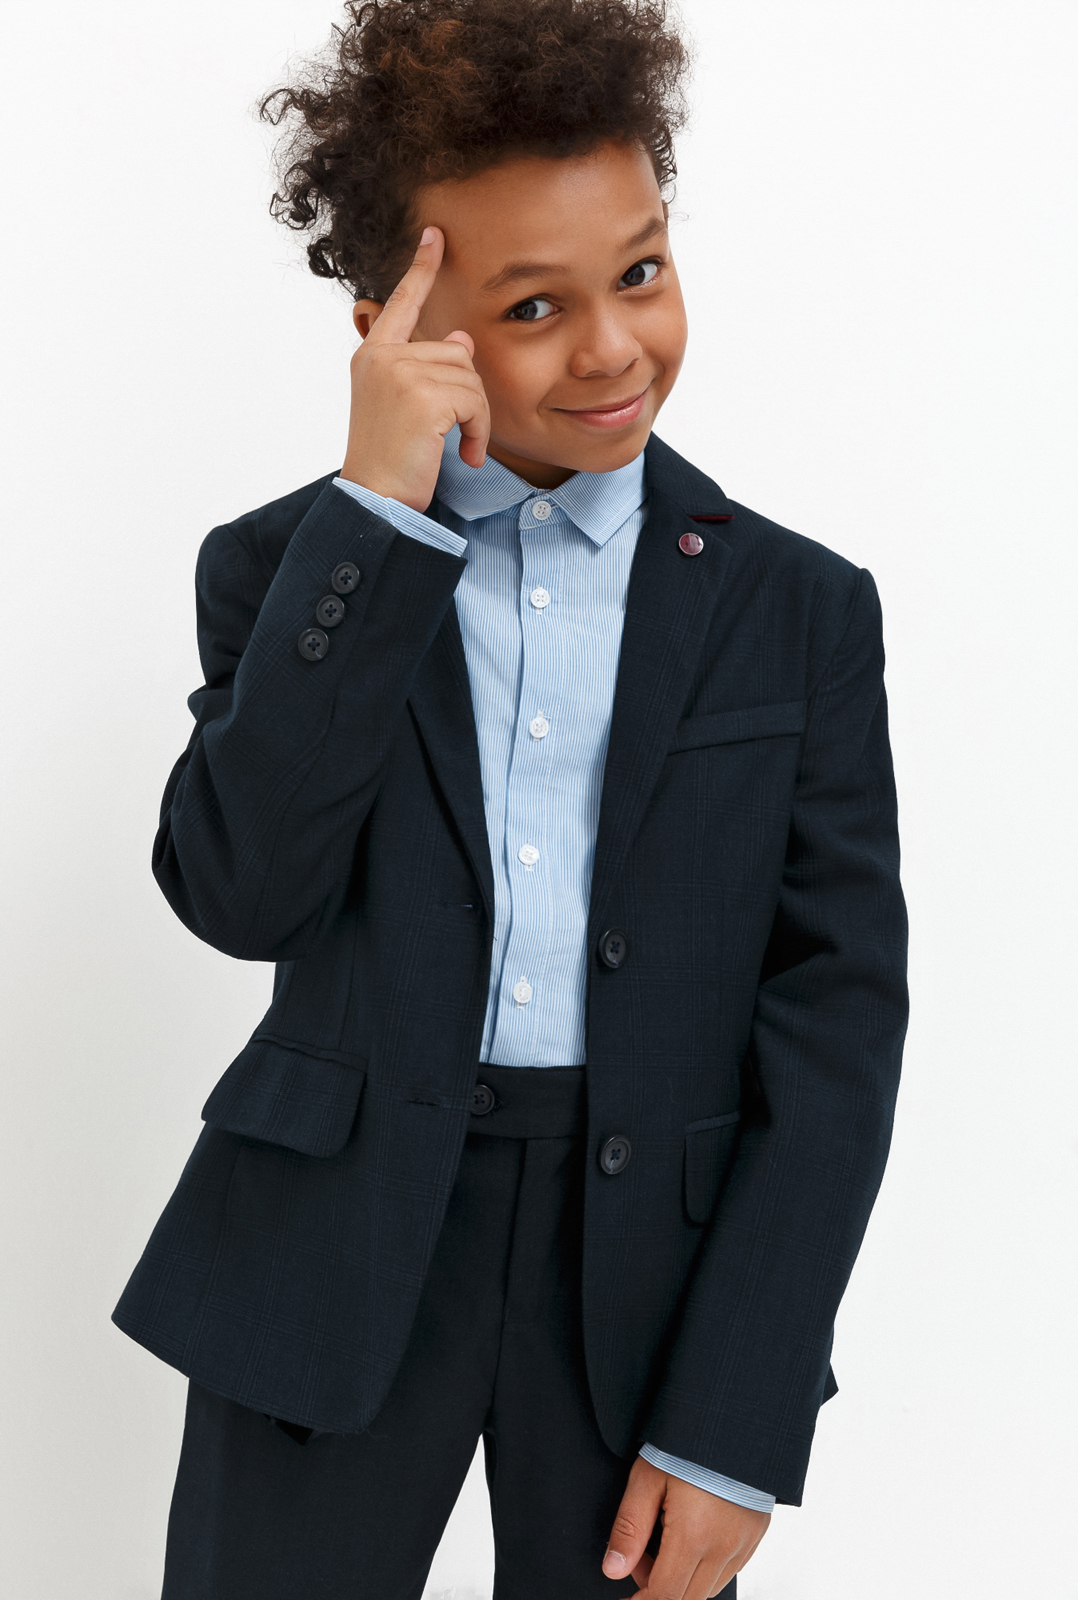 Пиджак для мальчика Acoola Chandler, цвет: темно-голубой. 20140130030_600. Размер 158